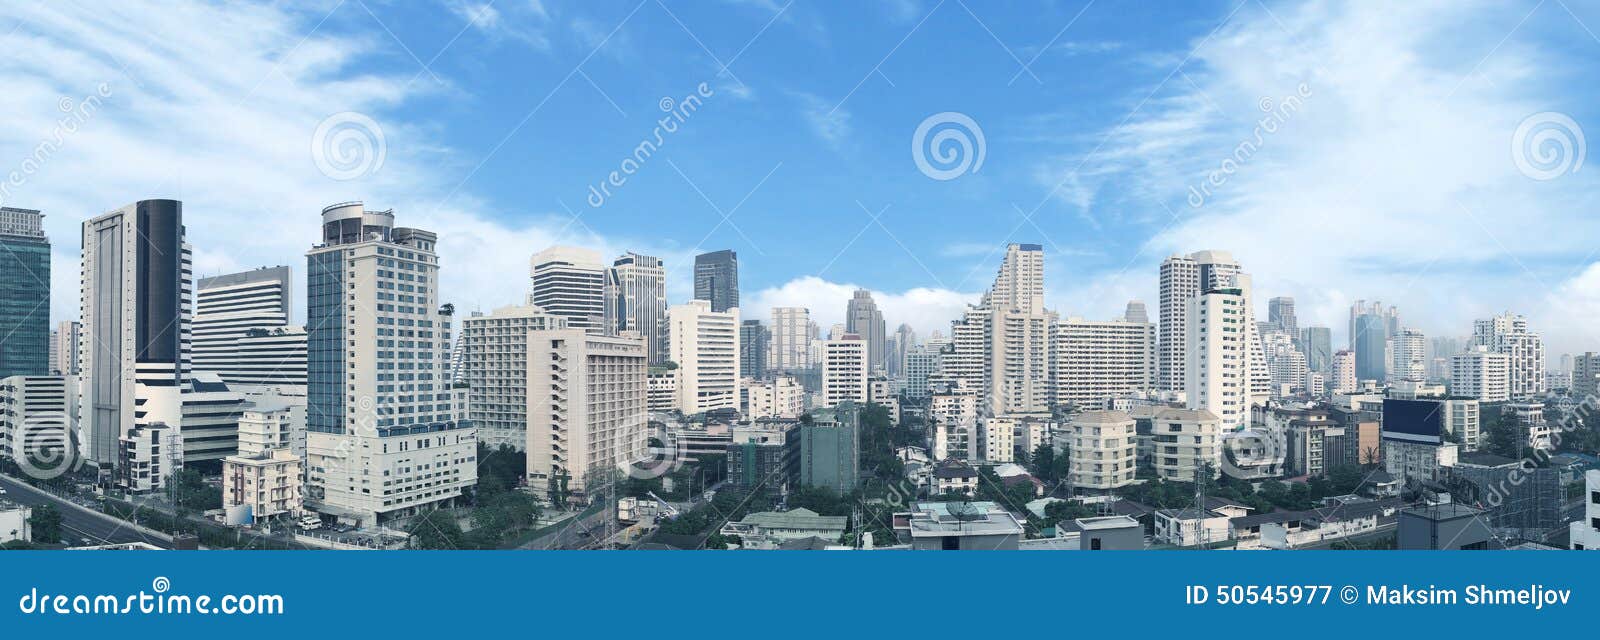 bangkok business center panorama view.